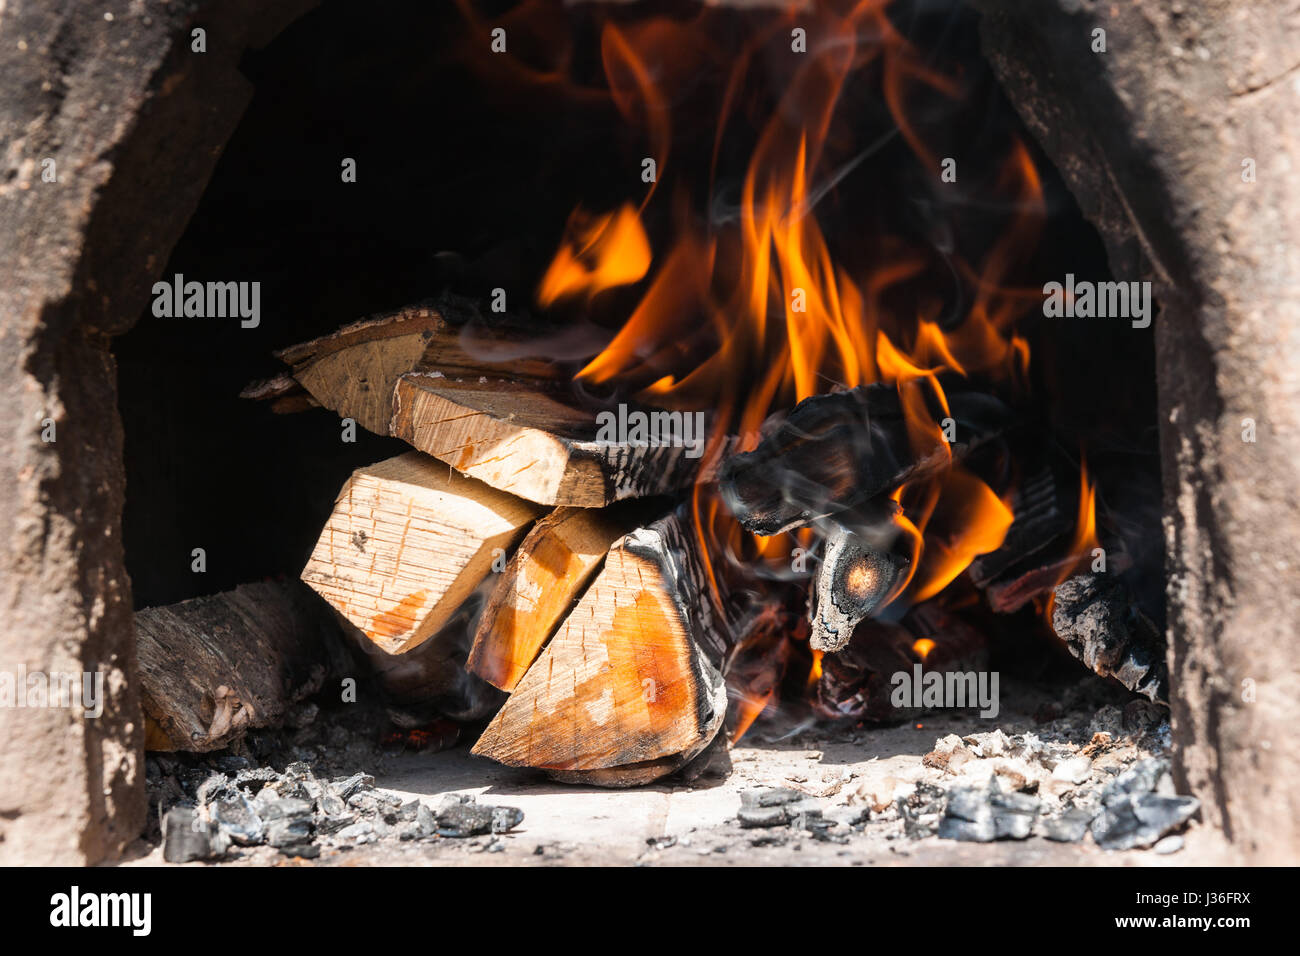 Brennholz in einem Vintage Ton Brennen Ofen. Feuer und ein Hauch von Rauch  über das verbrannte Holz Stockfotografie - Alamy